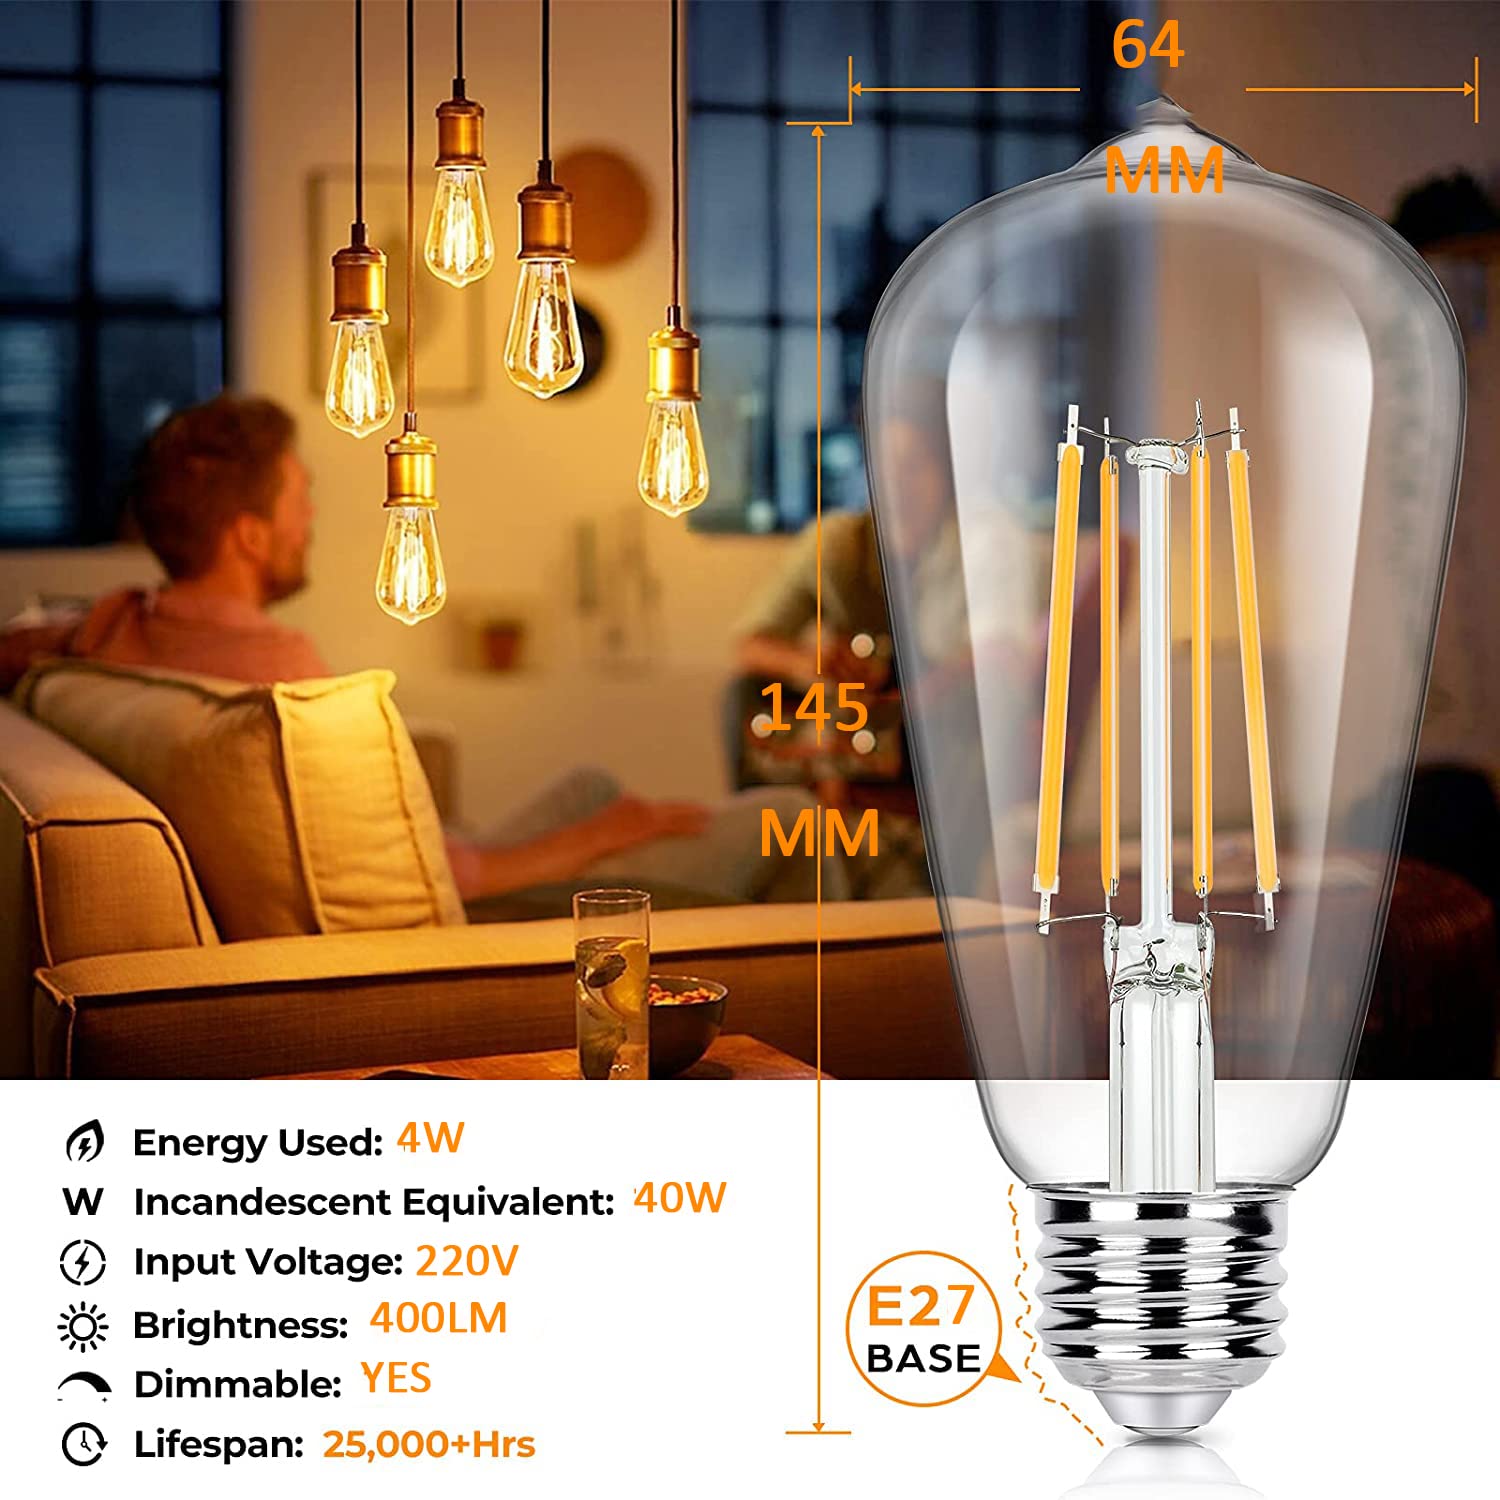 4W ST64 E26/E27 LED Vintage Light Bulb